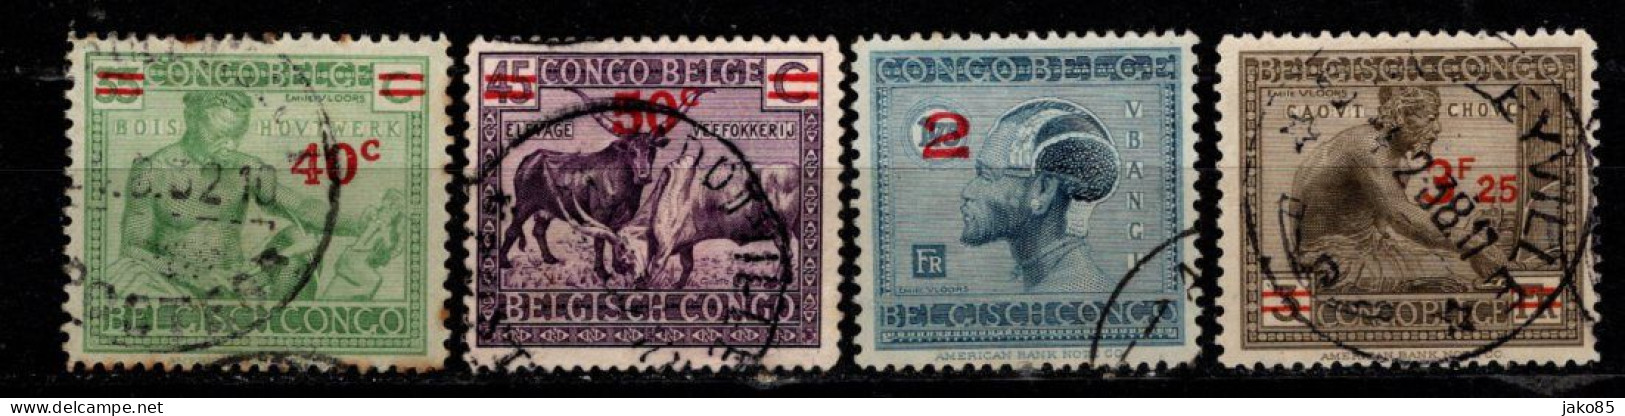 - CONGO BELGE - 1931 / 32 - YT N° 159 / 161A - Oblitérés - Surchargés - Série Complète - Nuevos